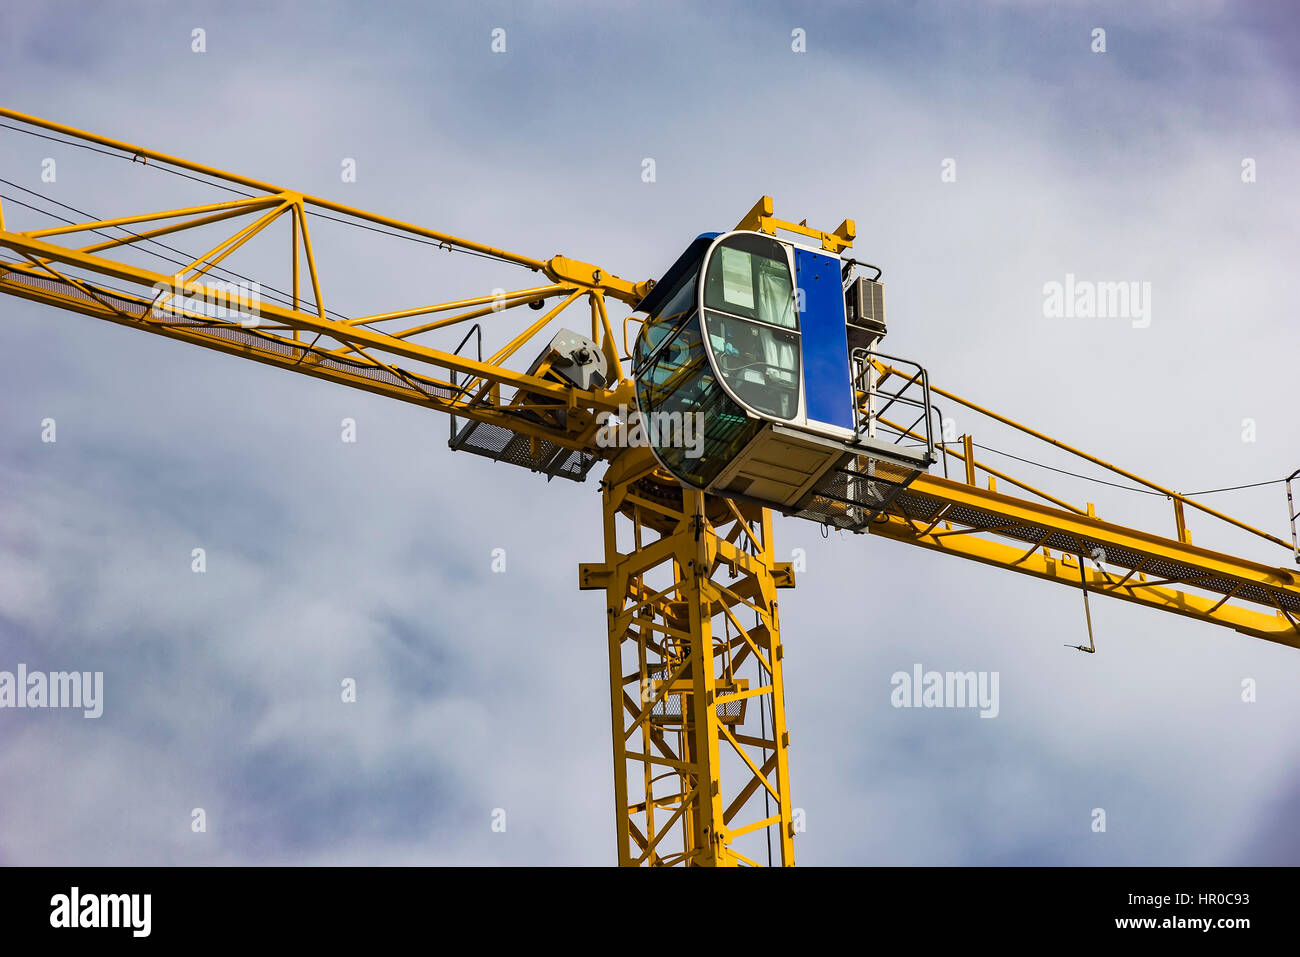 Bau-Turmdrehkran, Kabine, Closeup, auf blauer Himmel mit Wolken. Stockfoto